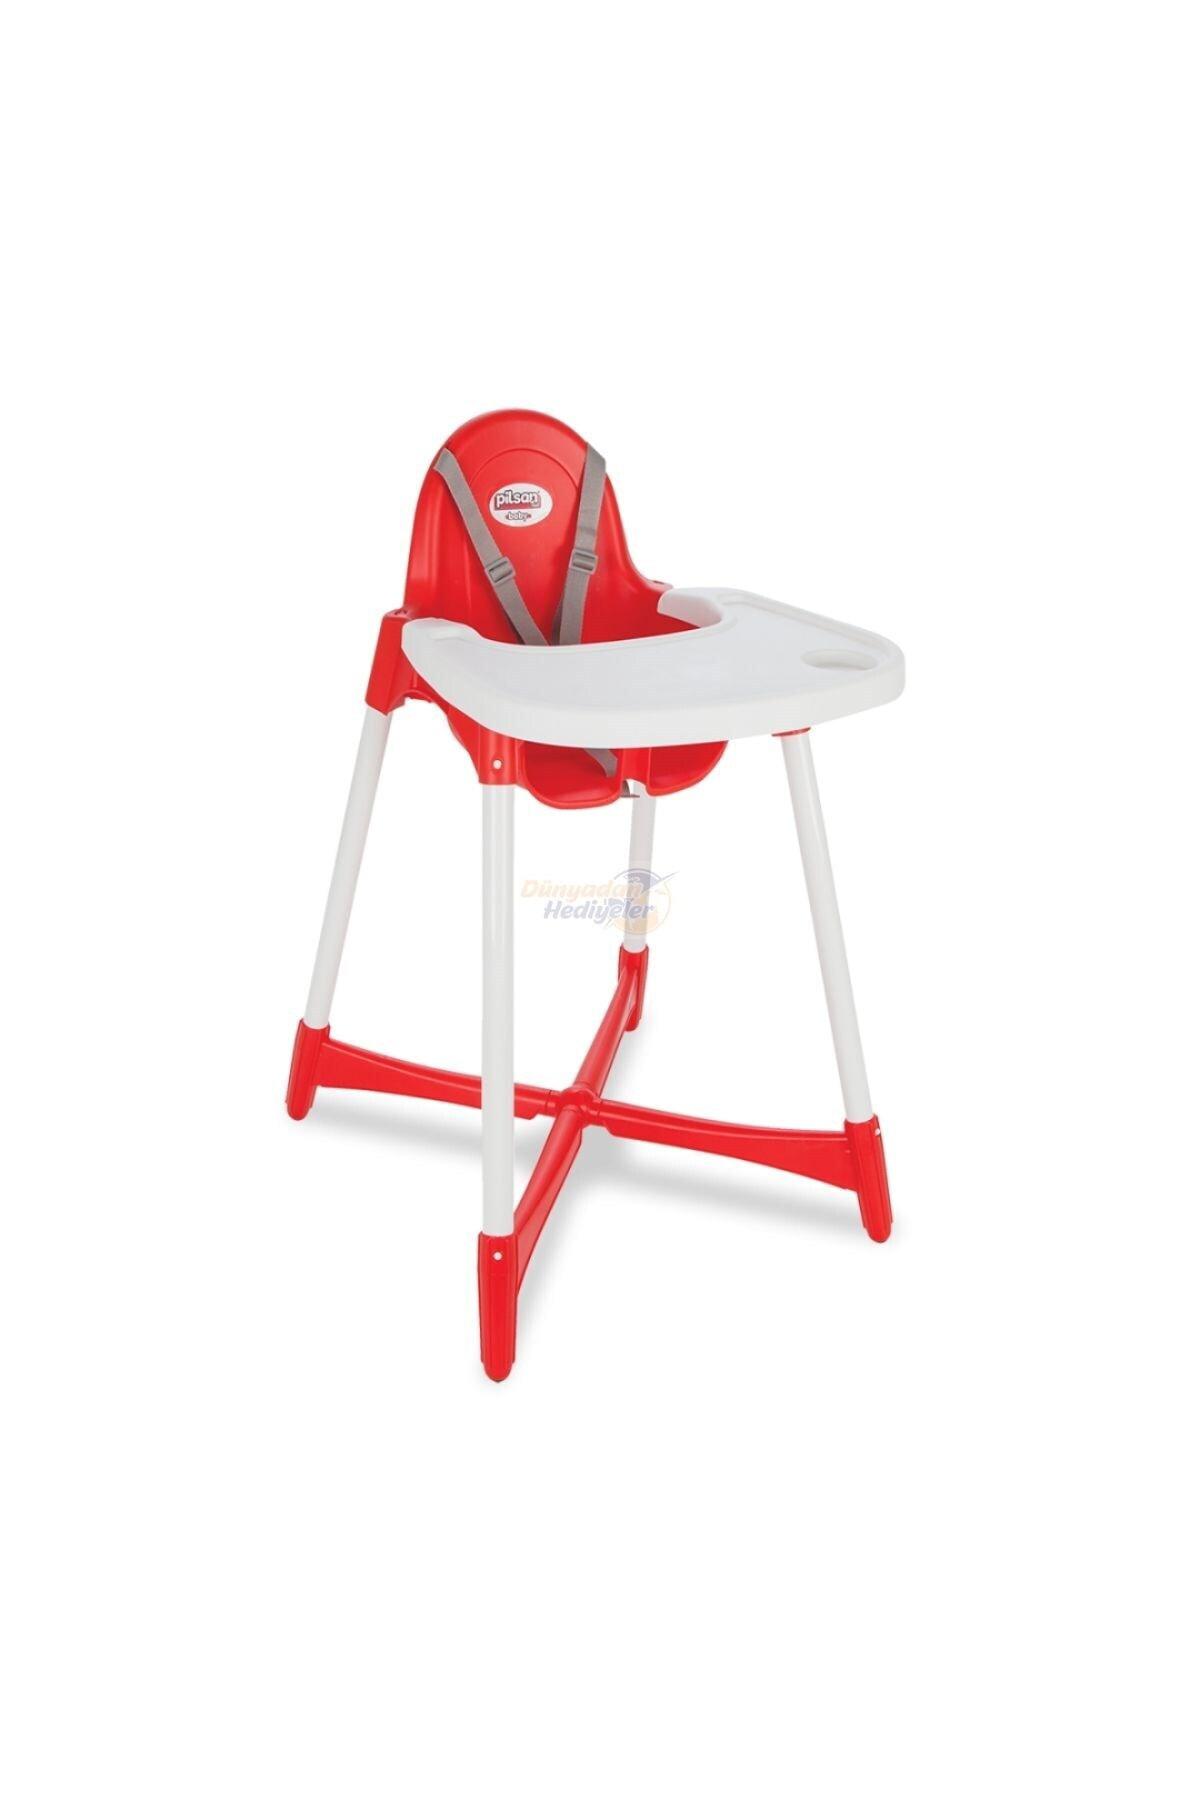 Pilsan Plastik Emniyet Kemeri 40 kg Kapasiteli Tepsili Katlanır Portatif Mama Sandalyesi Kırmızı